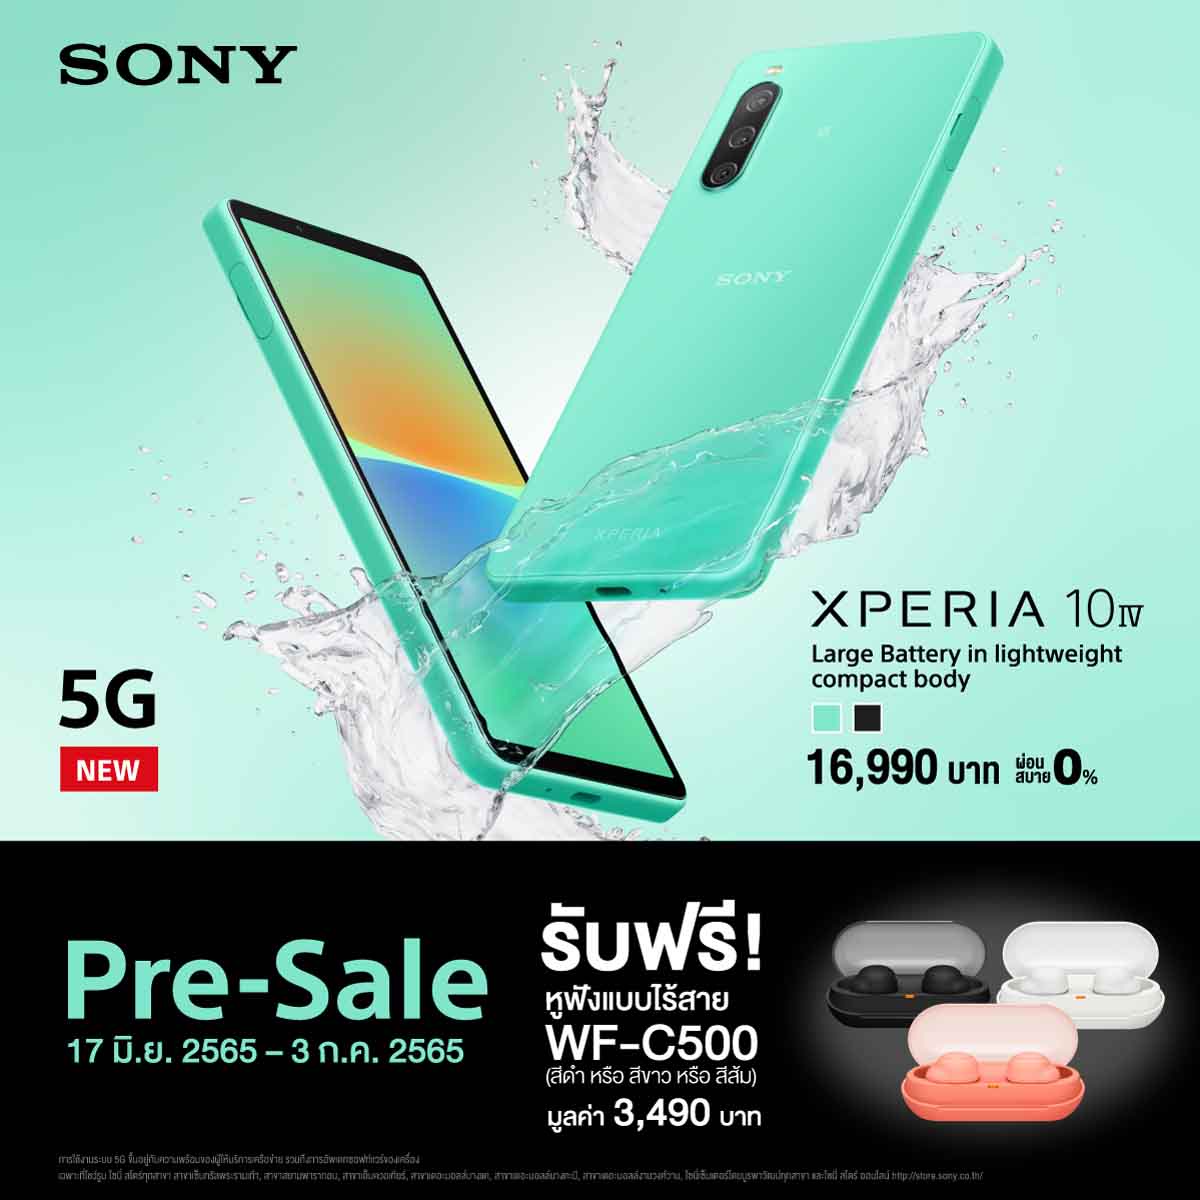 โซนี่ไทยพร้อมเปิดจอง Xperia 10 IV สมาร์ทโฟนระดับกลางรุ่นใหม่ล่าสุด ตั้งแต่วันที่ 17 มิถุนายน ถึง 3 กรกฎาคม